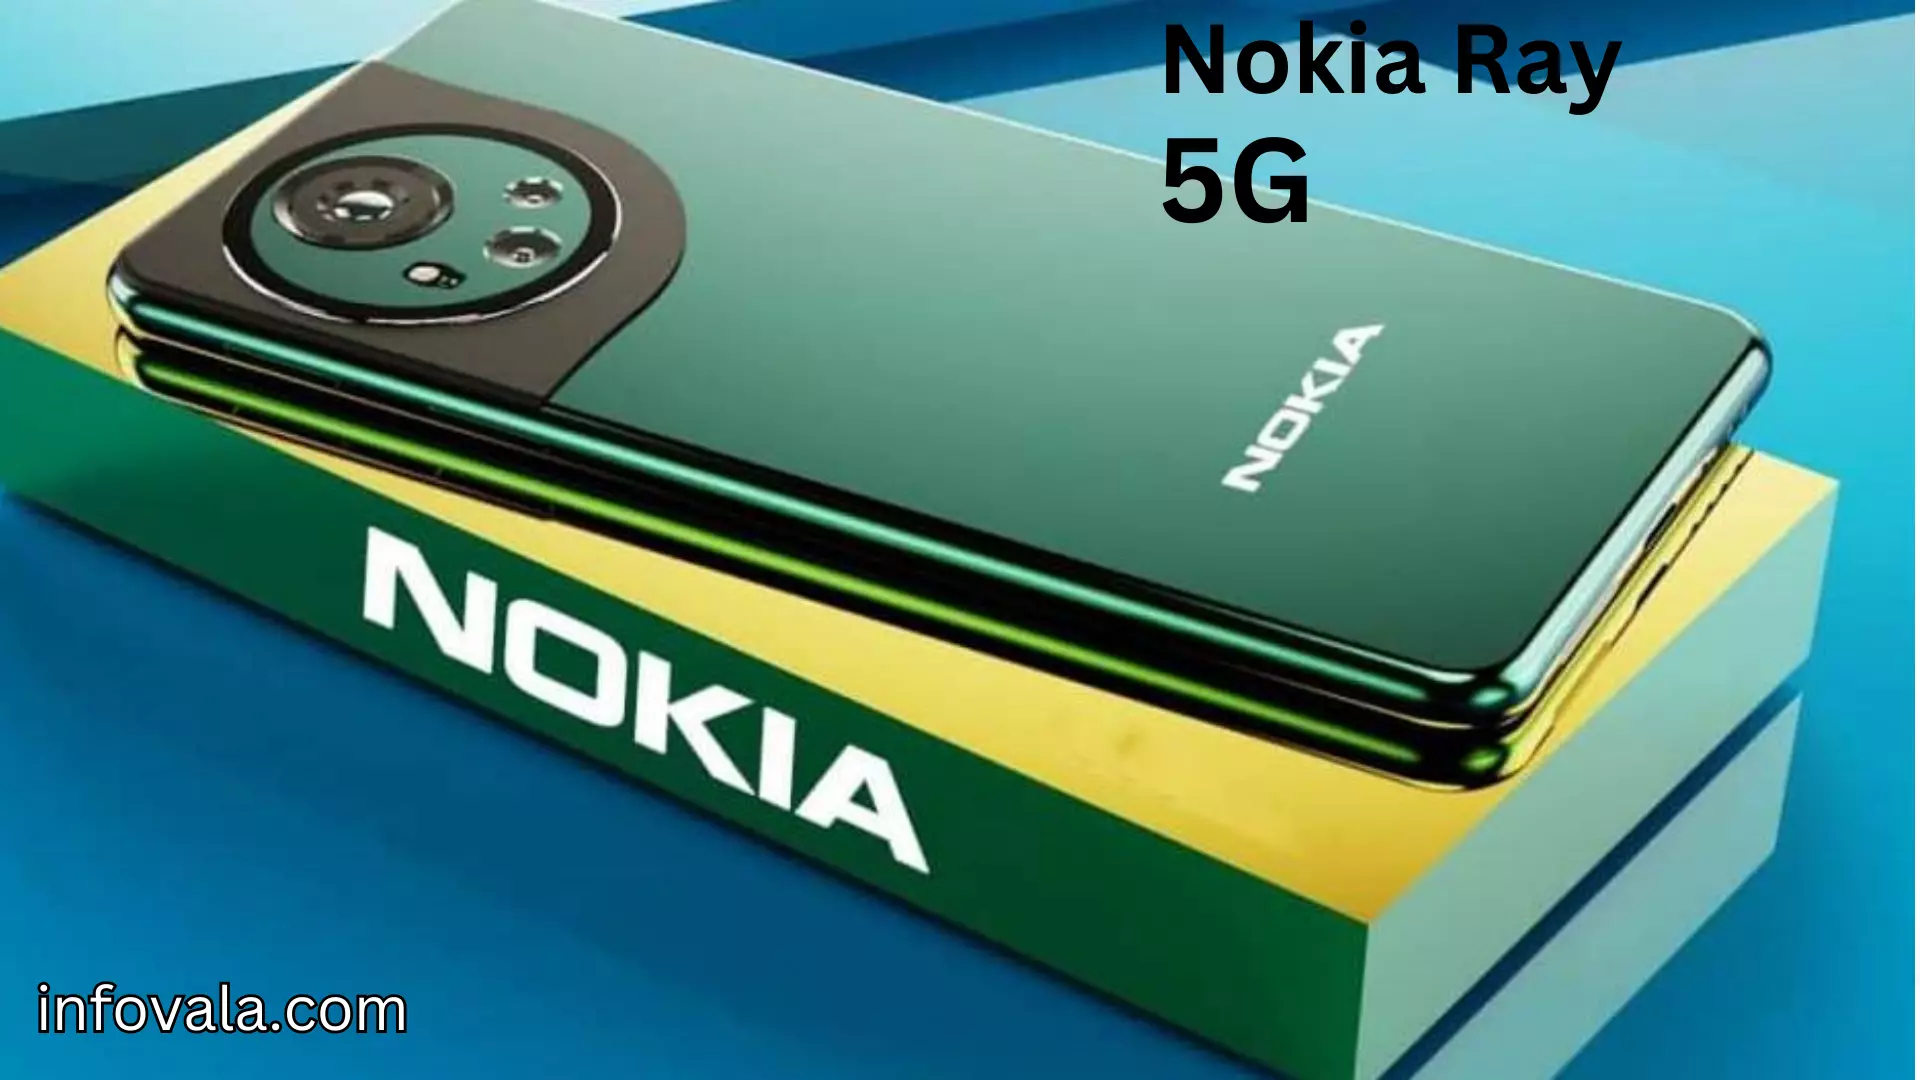 Nokia Ray 5G